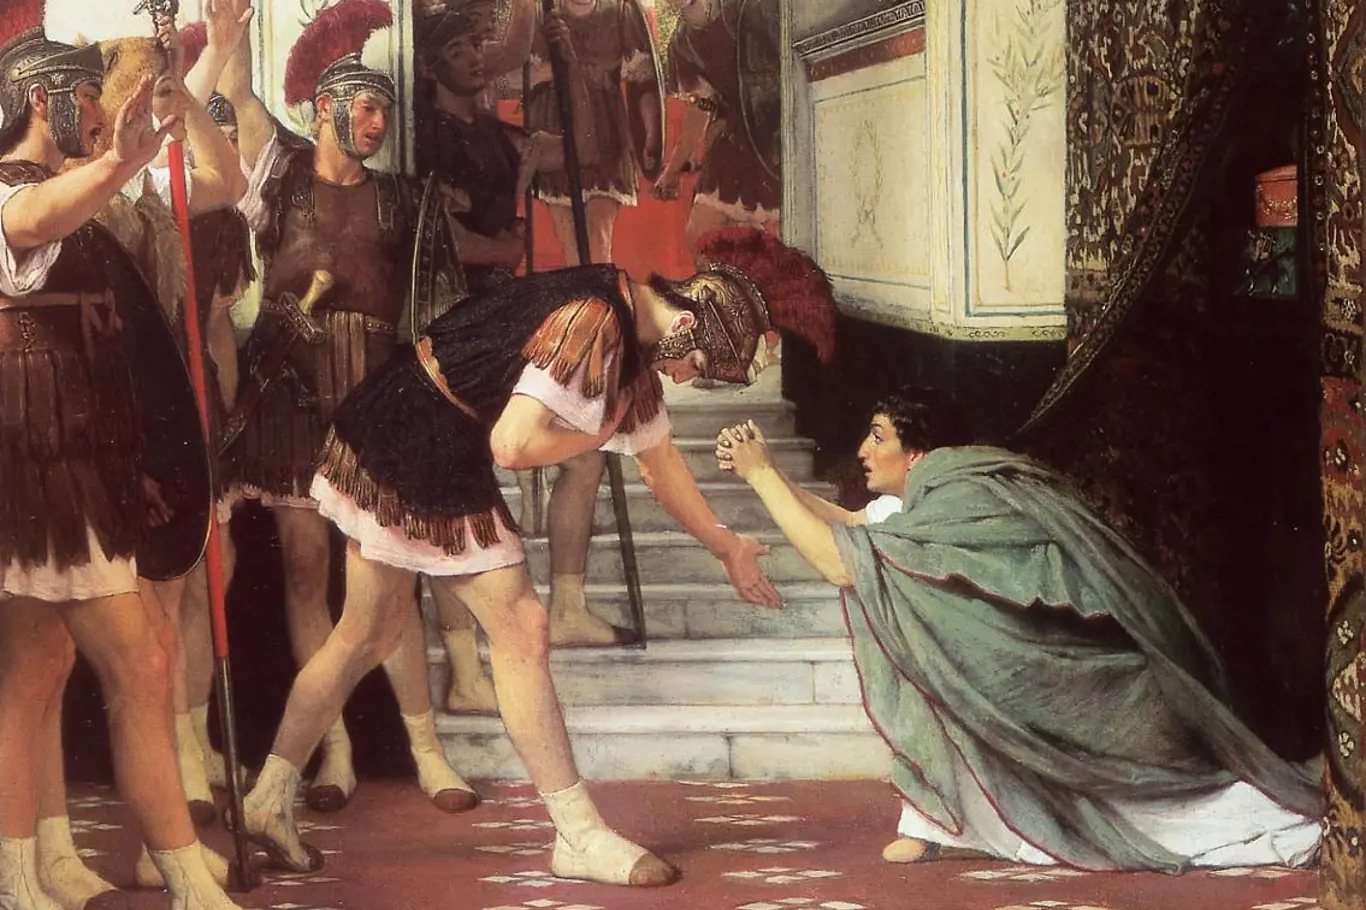 Provolání Claudia císařem. Podle jedné z verzí příběhu o Claudiově nástupu ho členové pretoriánské gardy našli po zavraždění Caliguly v roce 41 n. l. schovaného za závěsem a prohlásili ho císařem.